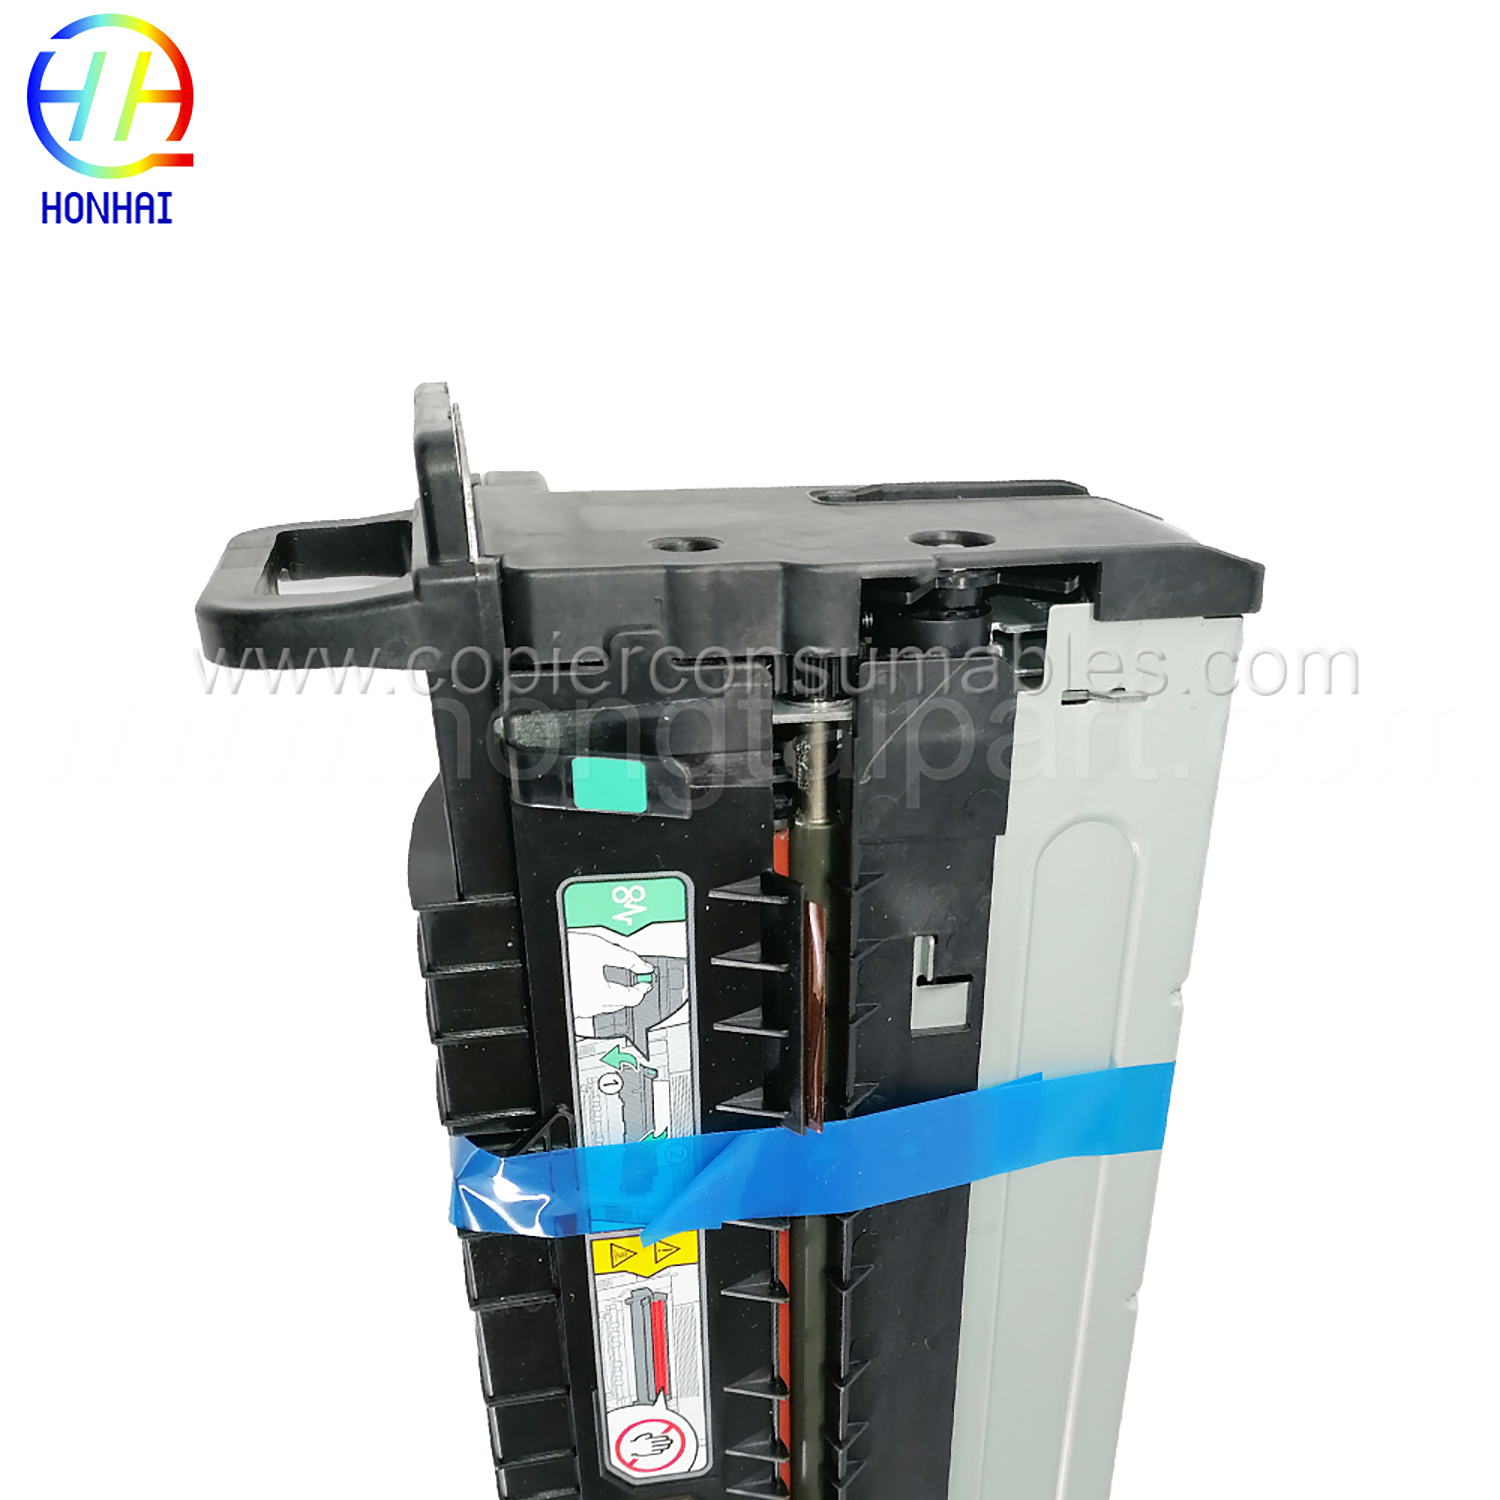 Unidade fusora 220V para Samsung SL-K7400, S-K7500, SL-K7600 JC91-01194A (5) 拷贝